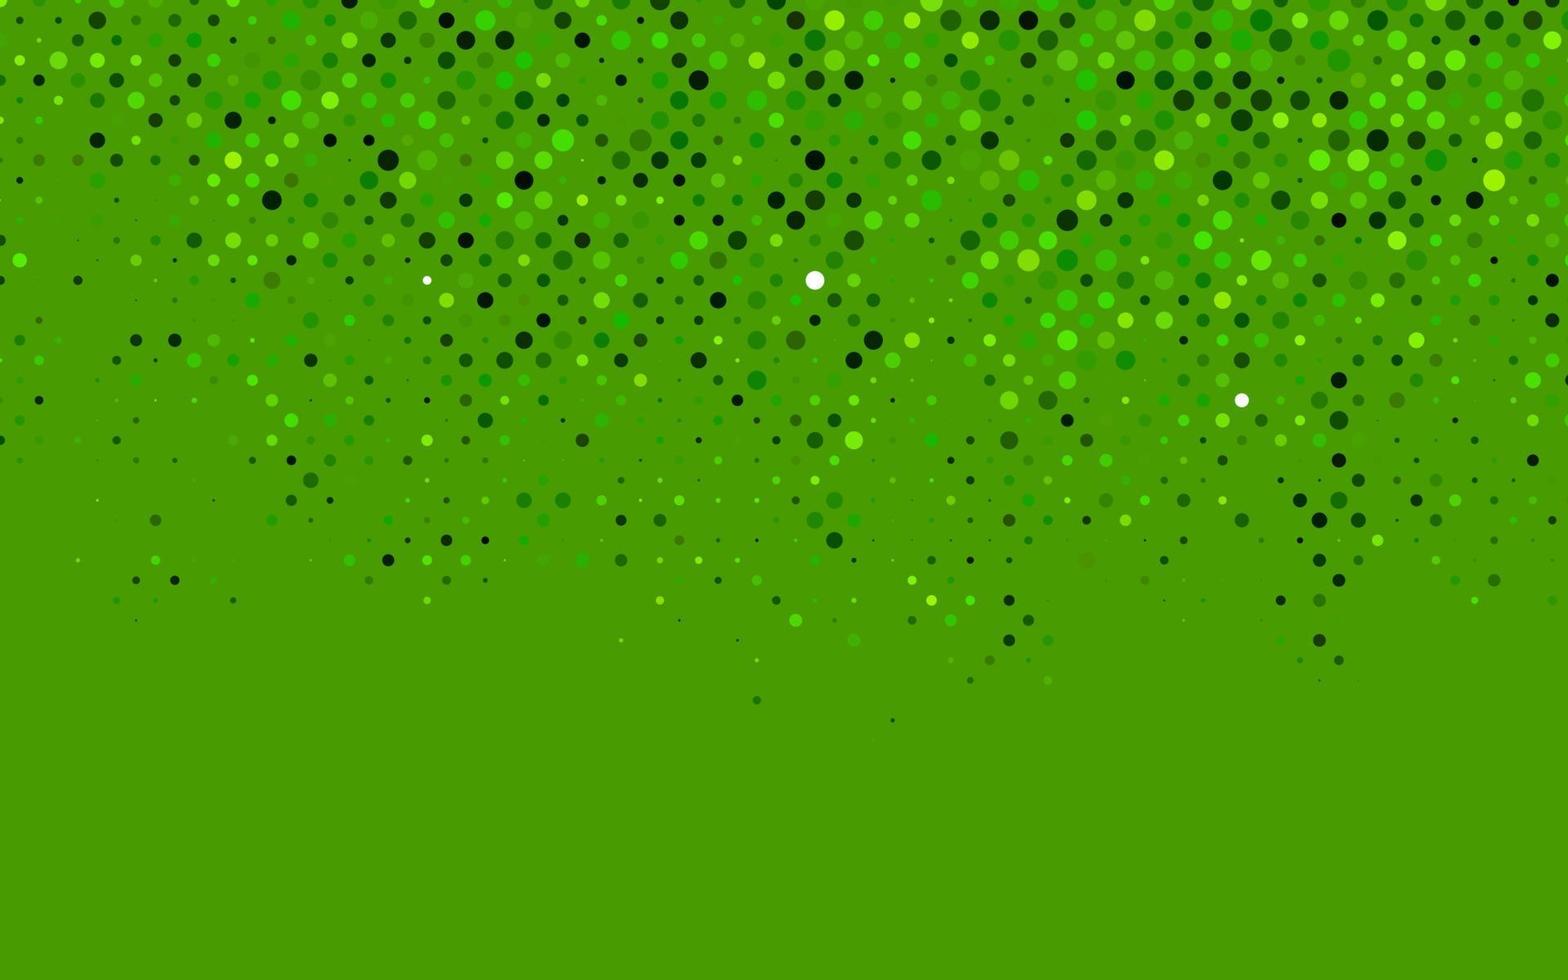 ljusgrön vektorlayout med cirkelformer. vektor